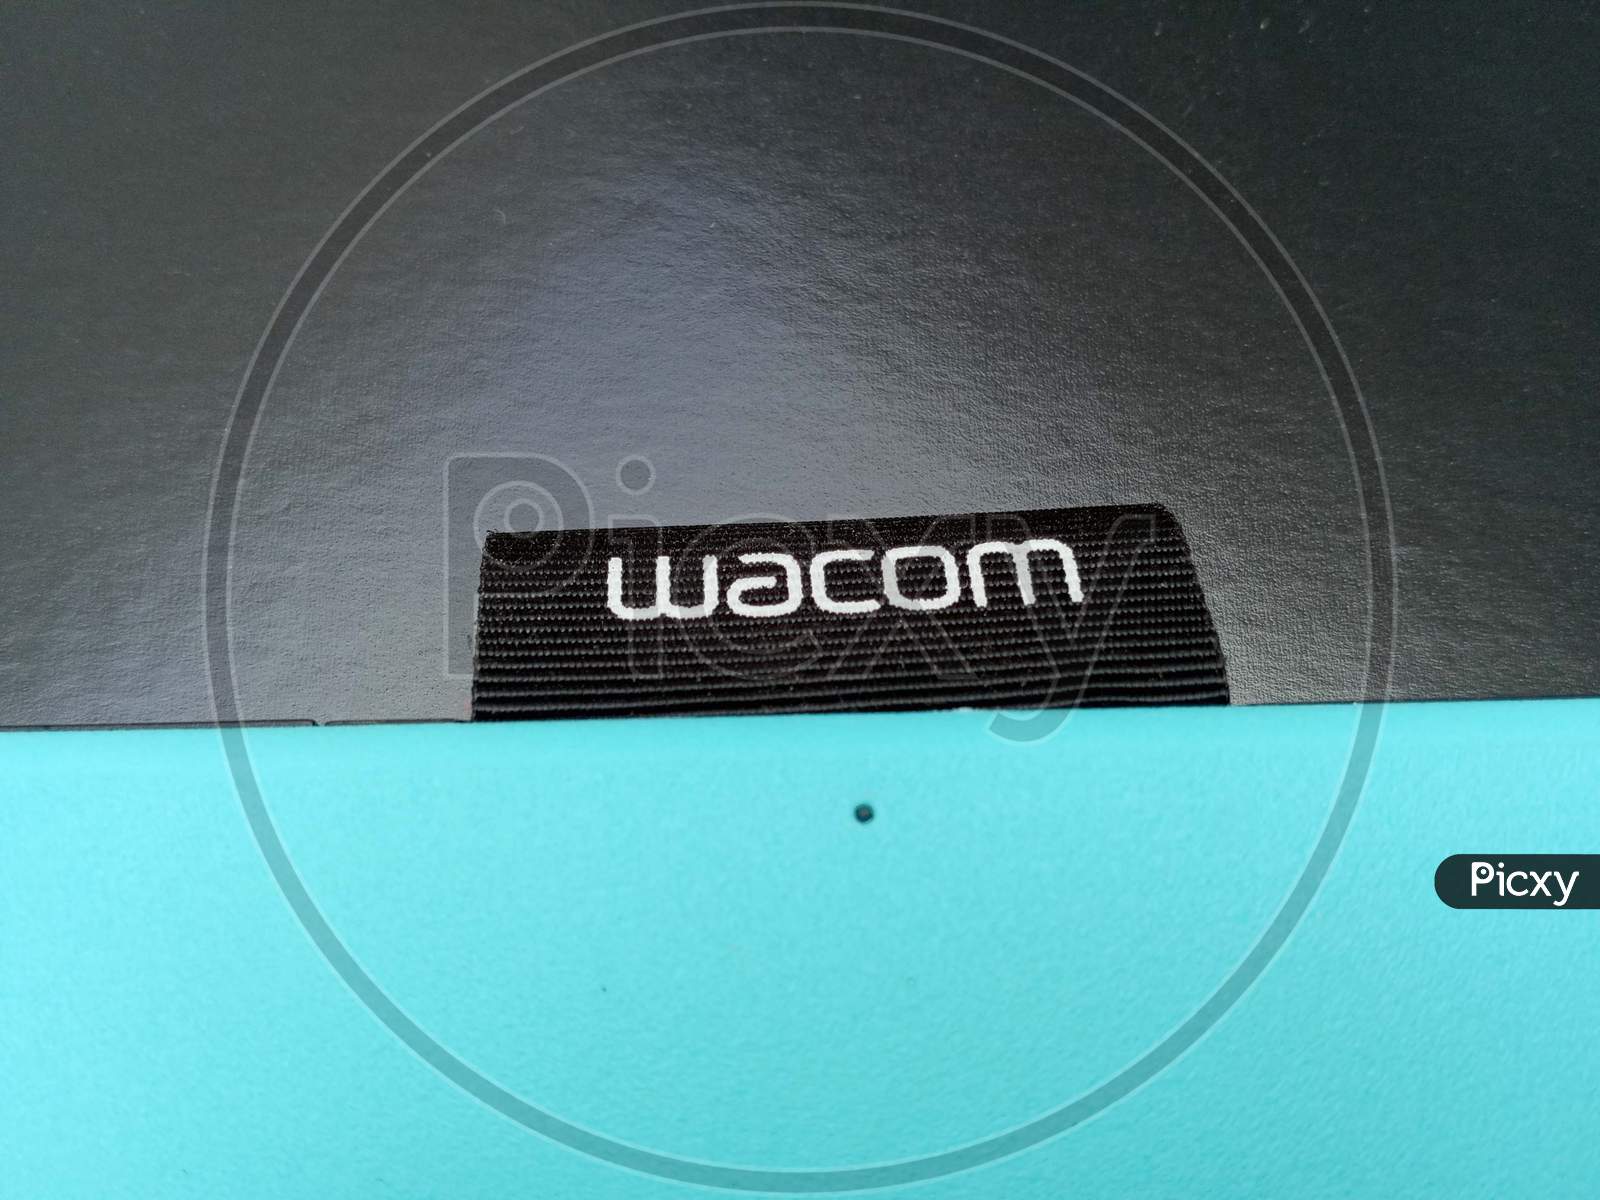 Wacom logo close up on a its product,